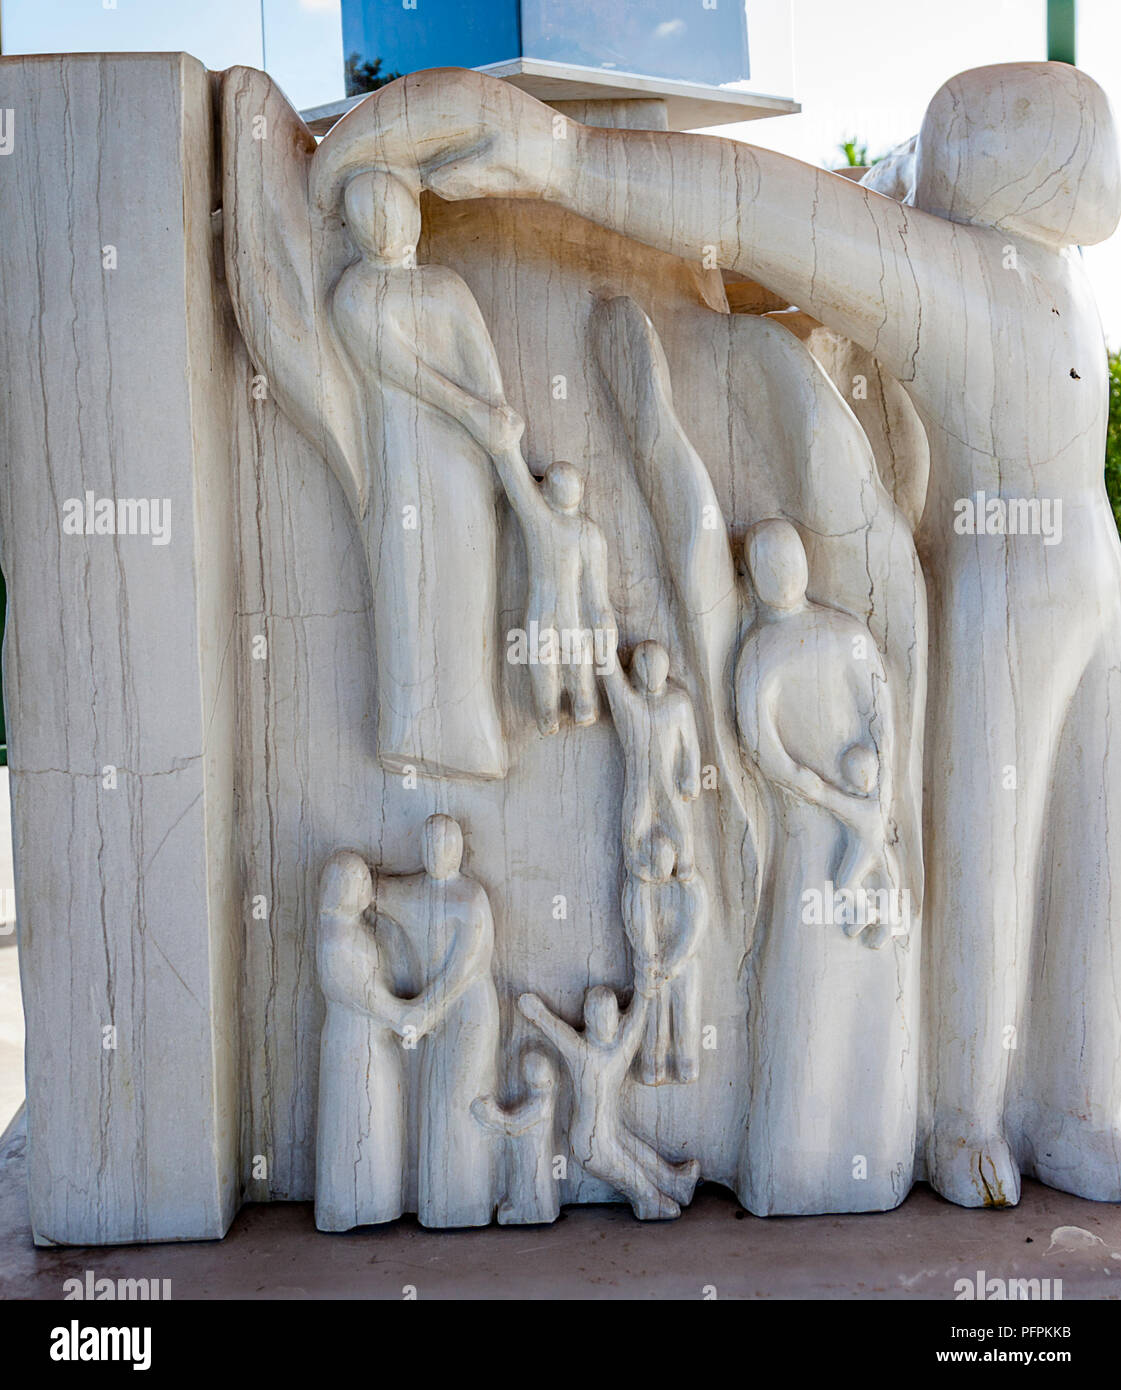 Weißer Marmor Skulptur von Menschen, die in NY 911 starb. Benoit Menasche und Felix Gonzalez lokale Skulptur Künstler in Floirda. Stockfoto